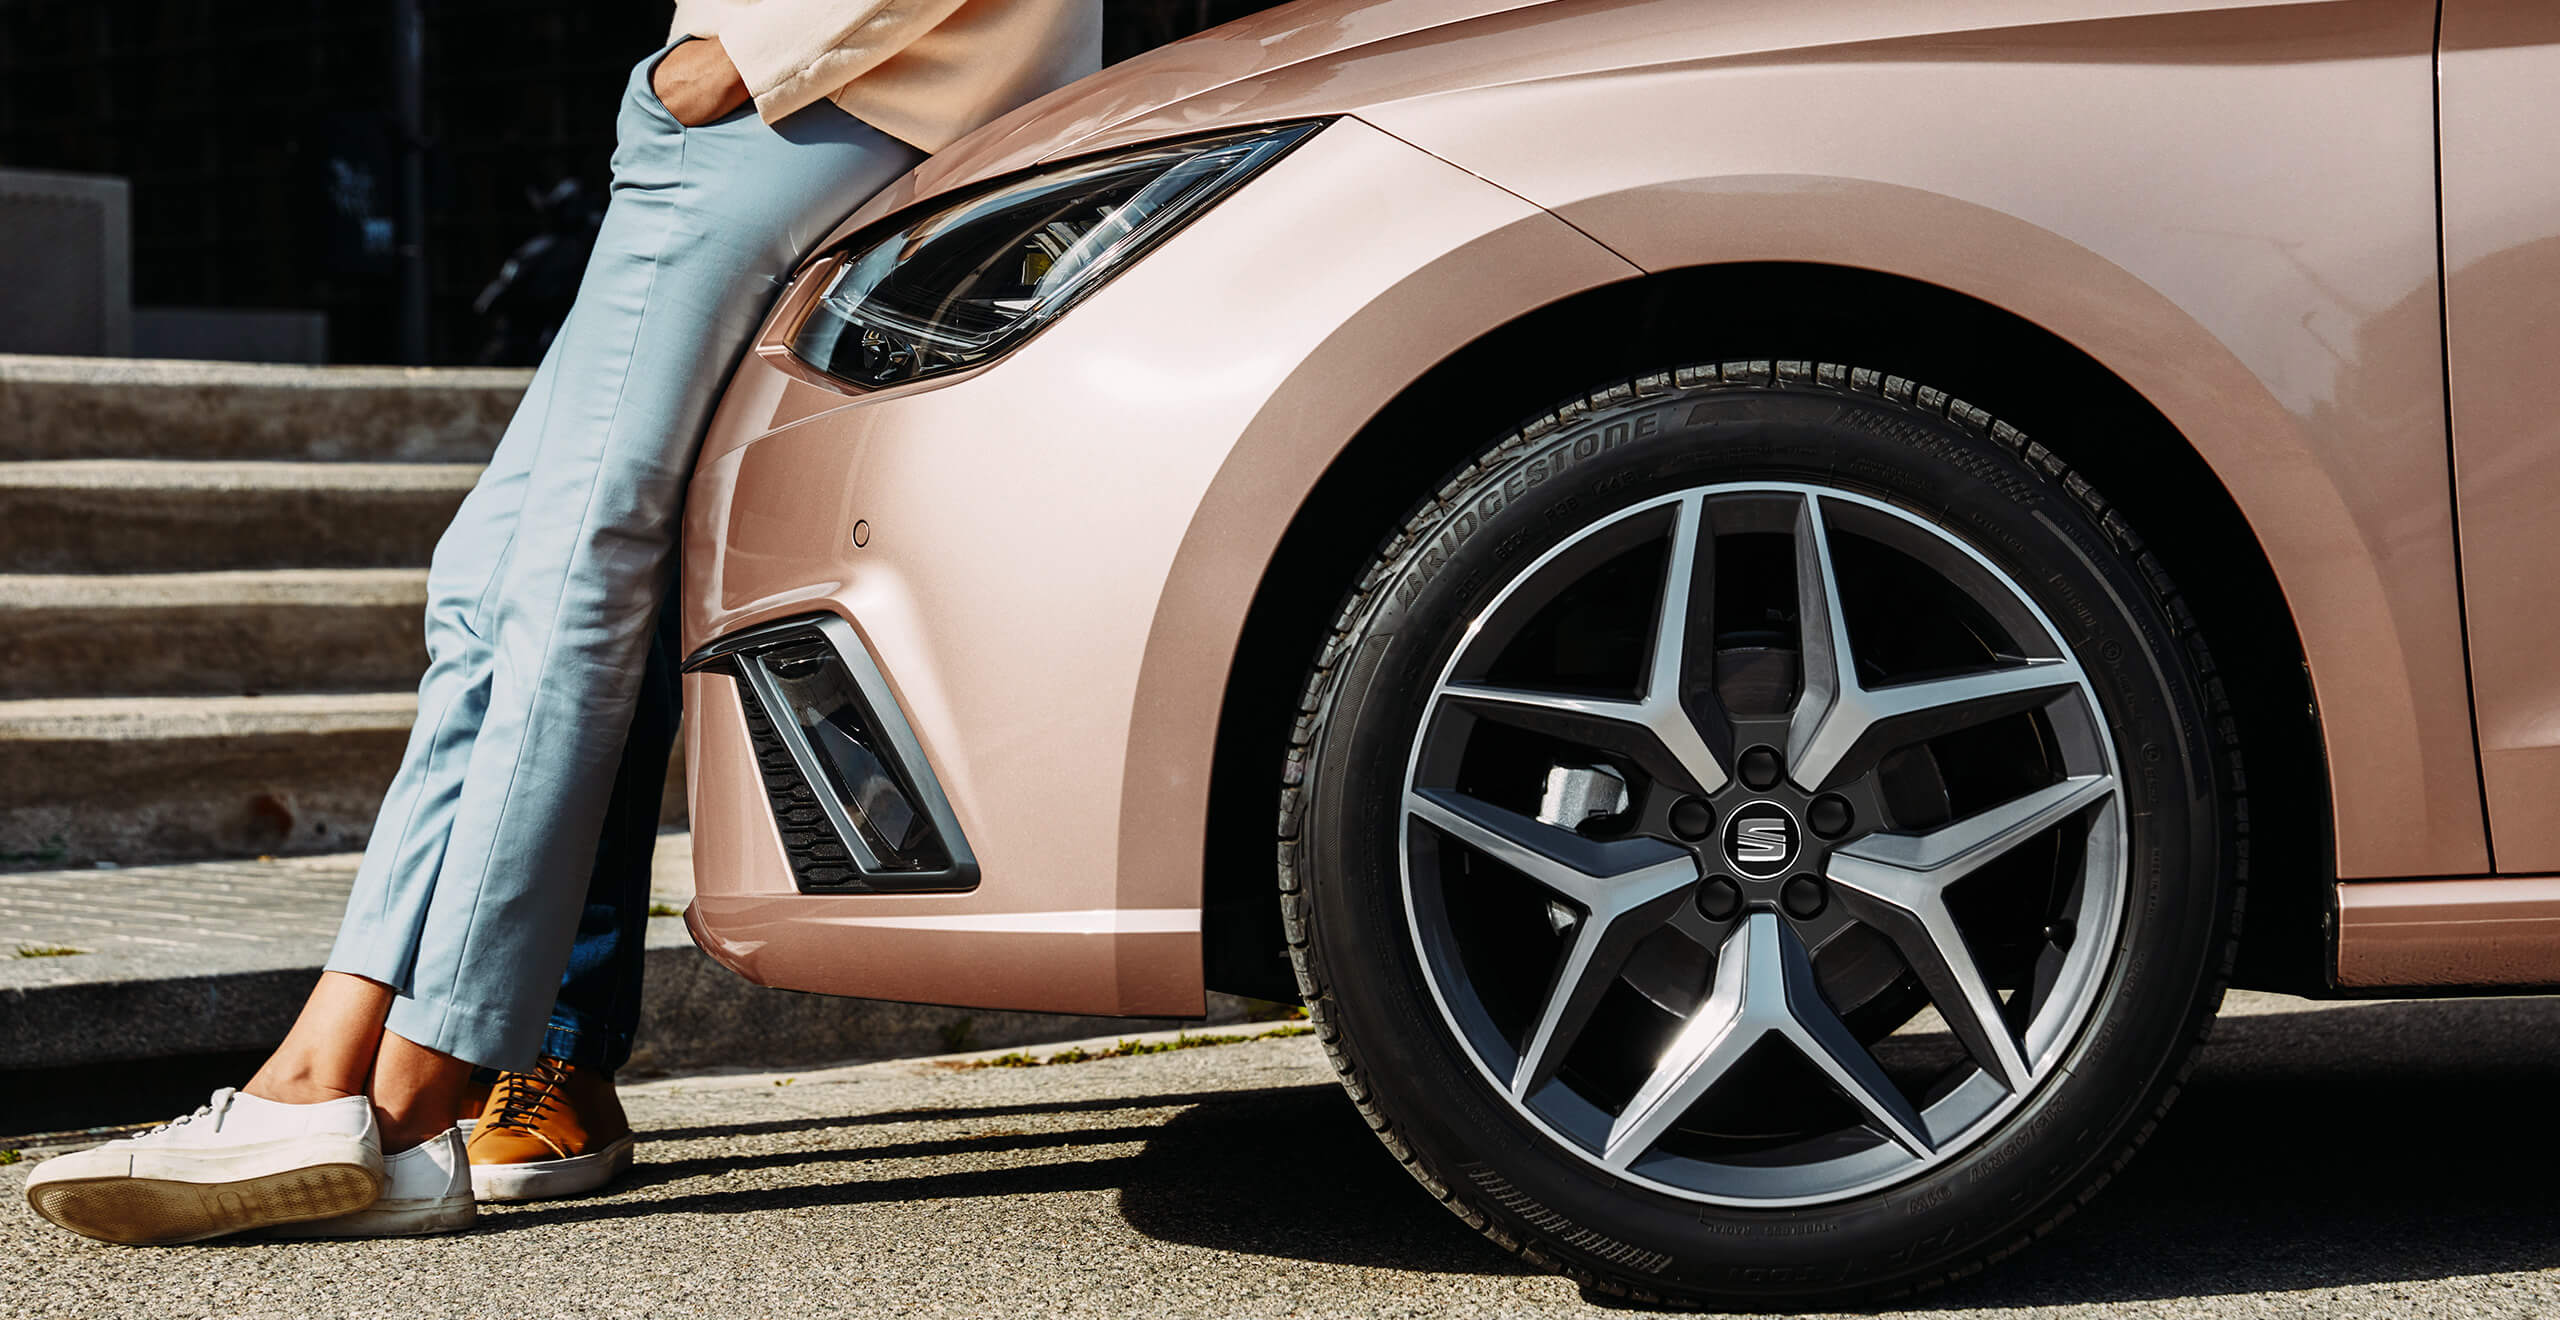 Servizi e manutenzione per vetture nuove SEAT, controlli per revisione auto – donna appoggiata a una vettura SEAT oro rosato